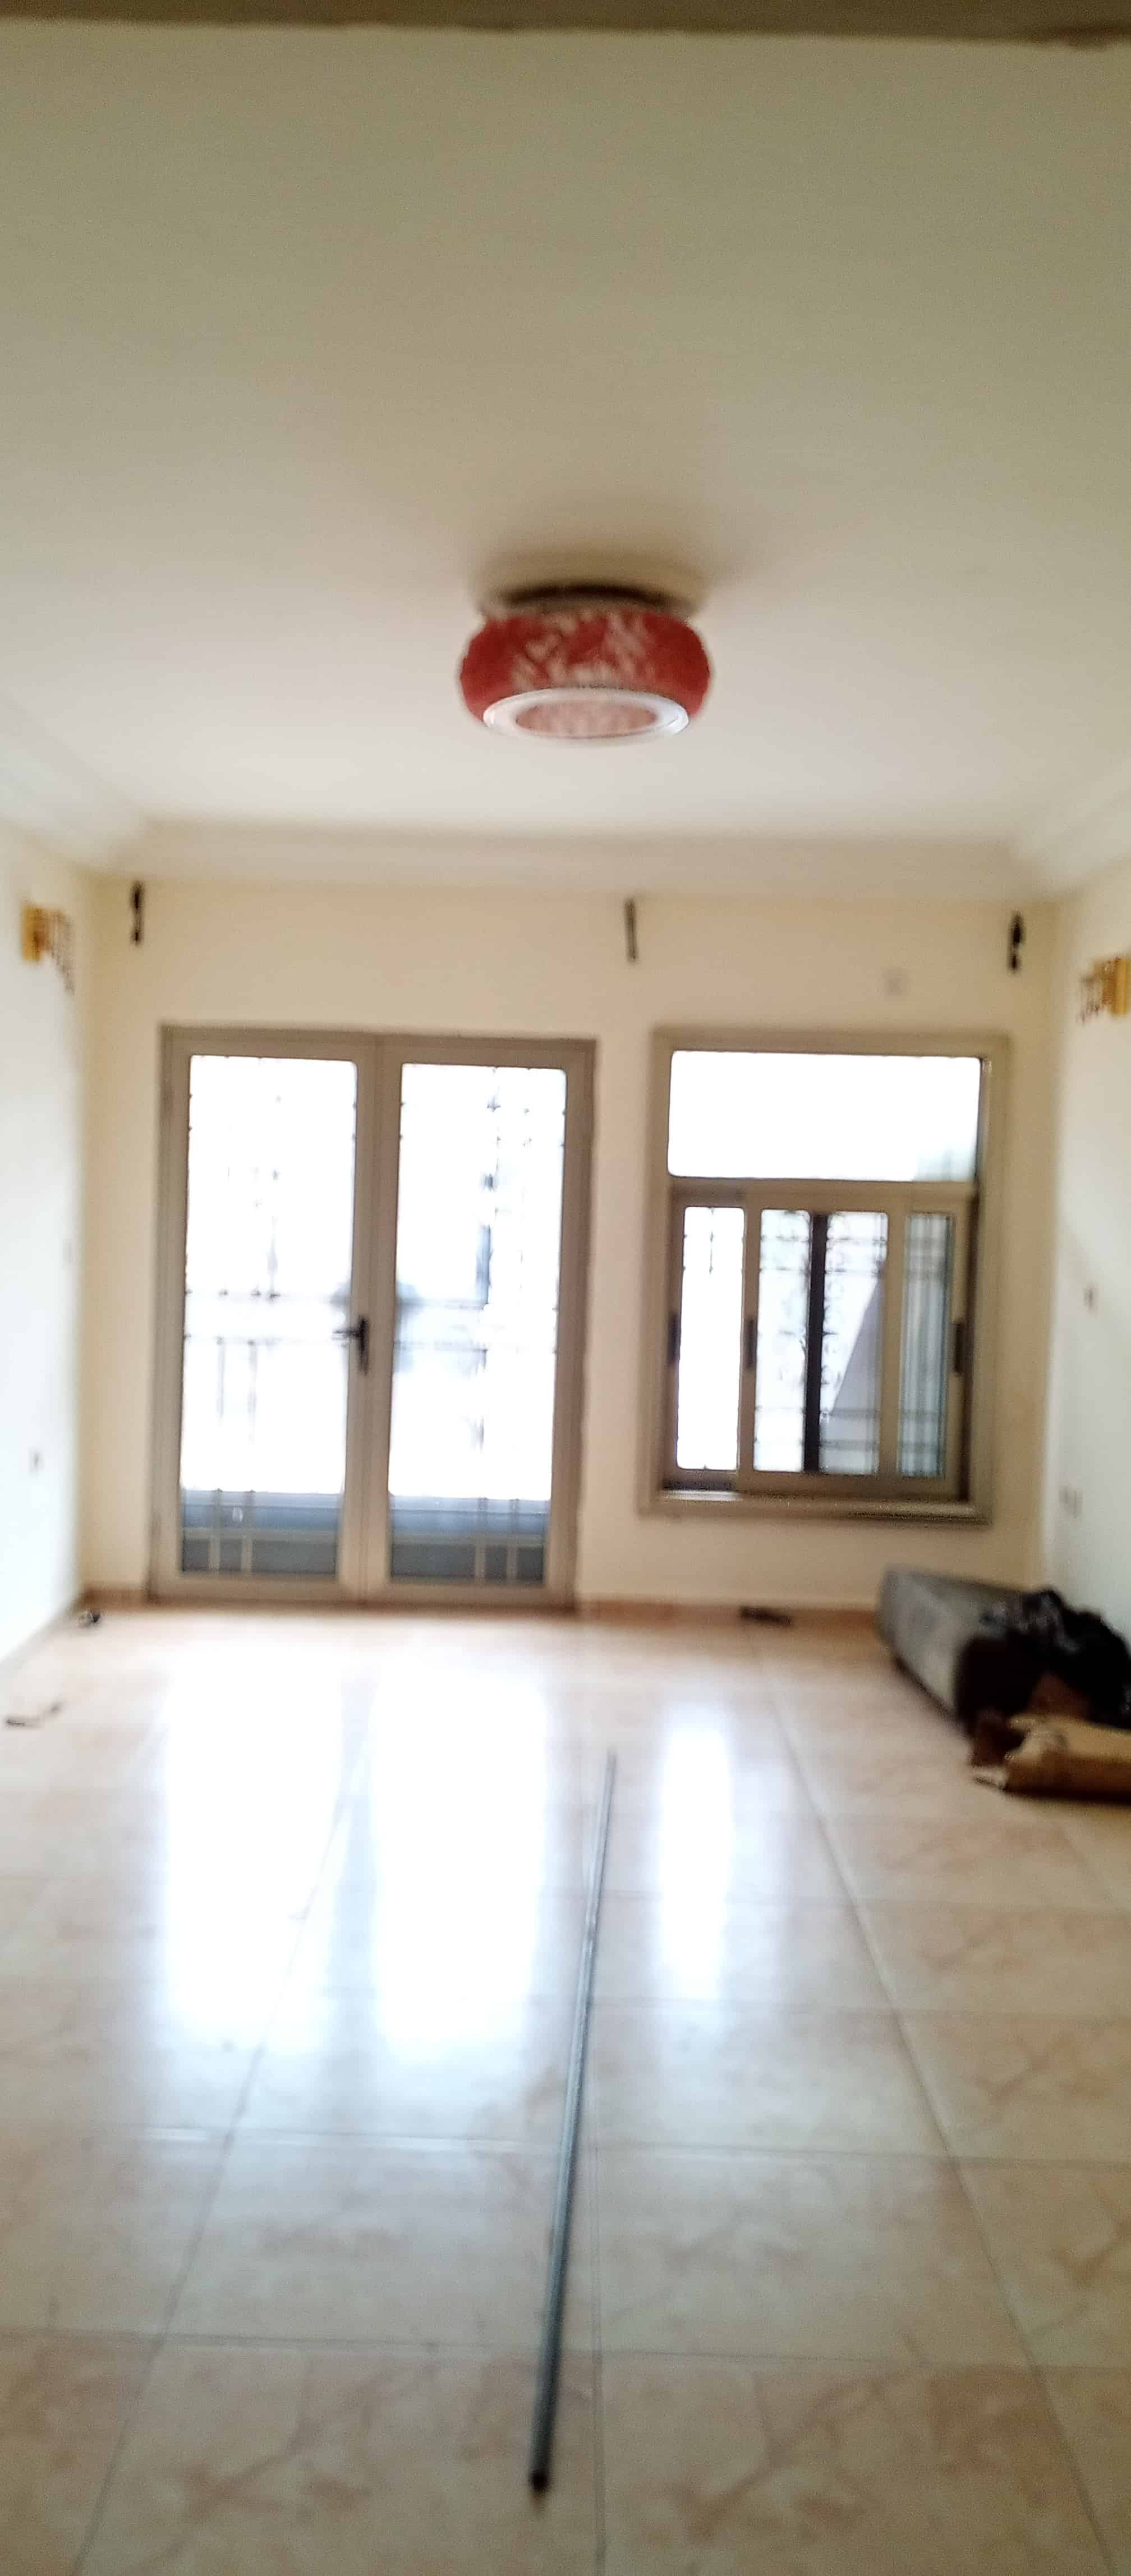 Apartment to rent - Yaoundé, Emana, Pont emana - 1 living room(s), 2 bedroom(s), 1 bathroom(s) - 165 000 FCFA / month